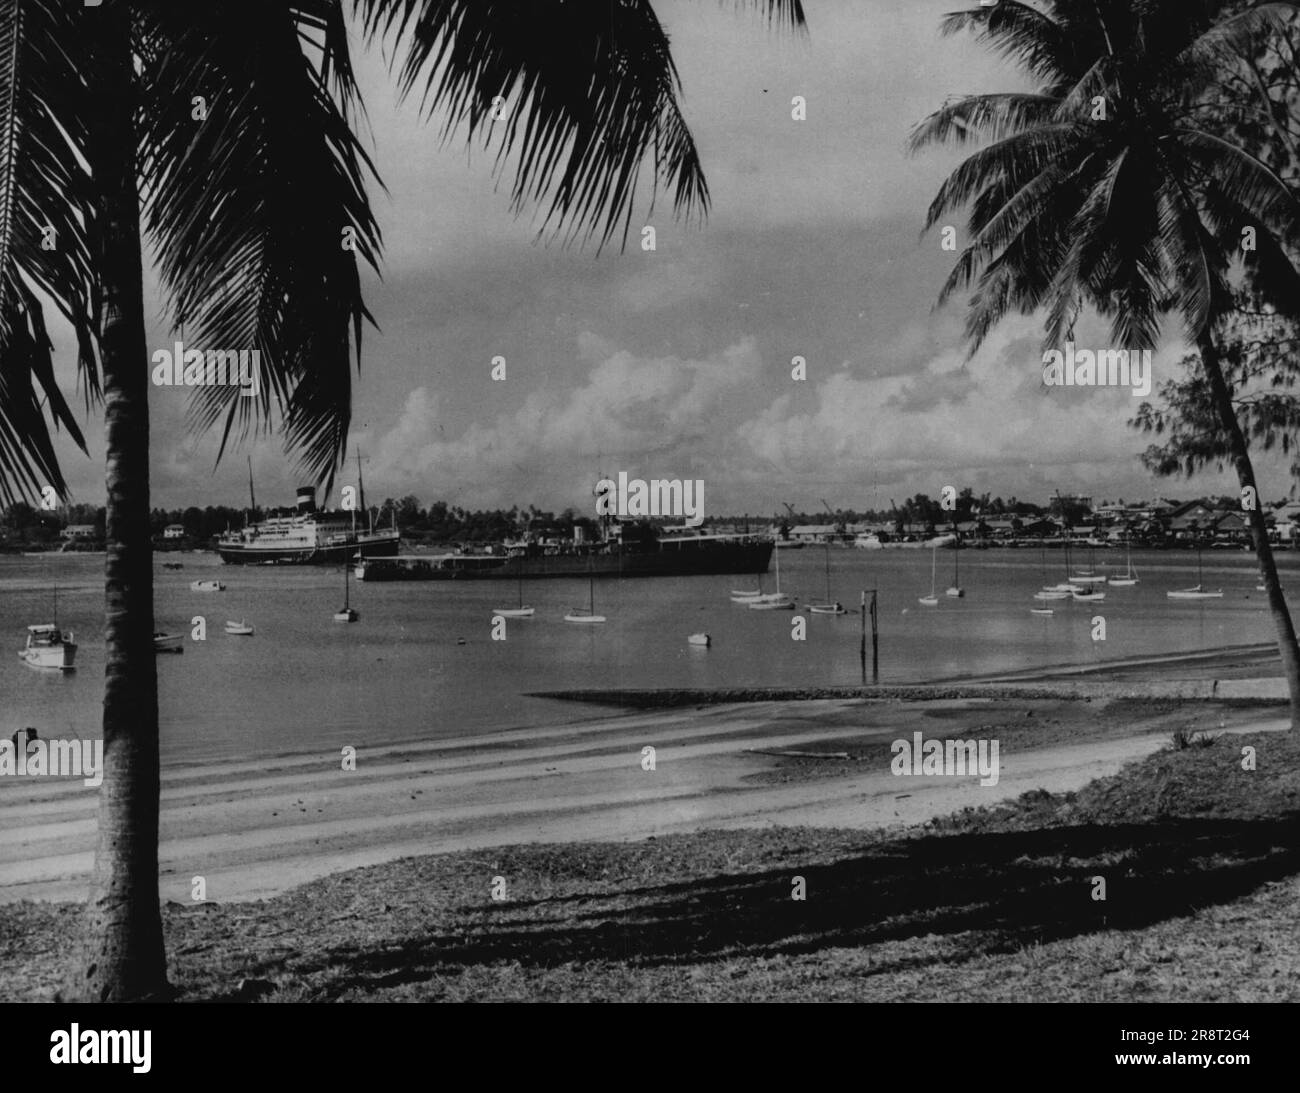 Kolonialblick - dar-Es-Salaam, Tanganyika - eine allgemeine Sicht auf den Hafen; dar-es-Salaam, die Hauptstadt des Gebiets, hat 69.000 Einwohner. 18. November 1952. (Foto von Camera Press). Stockfoto